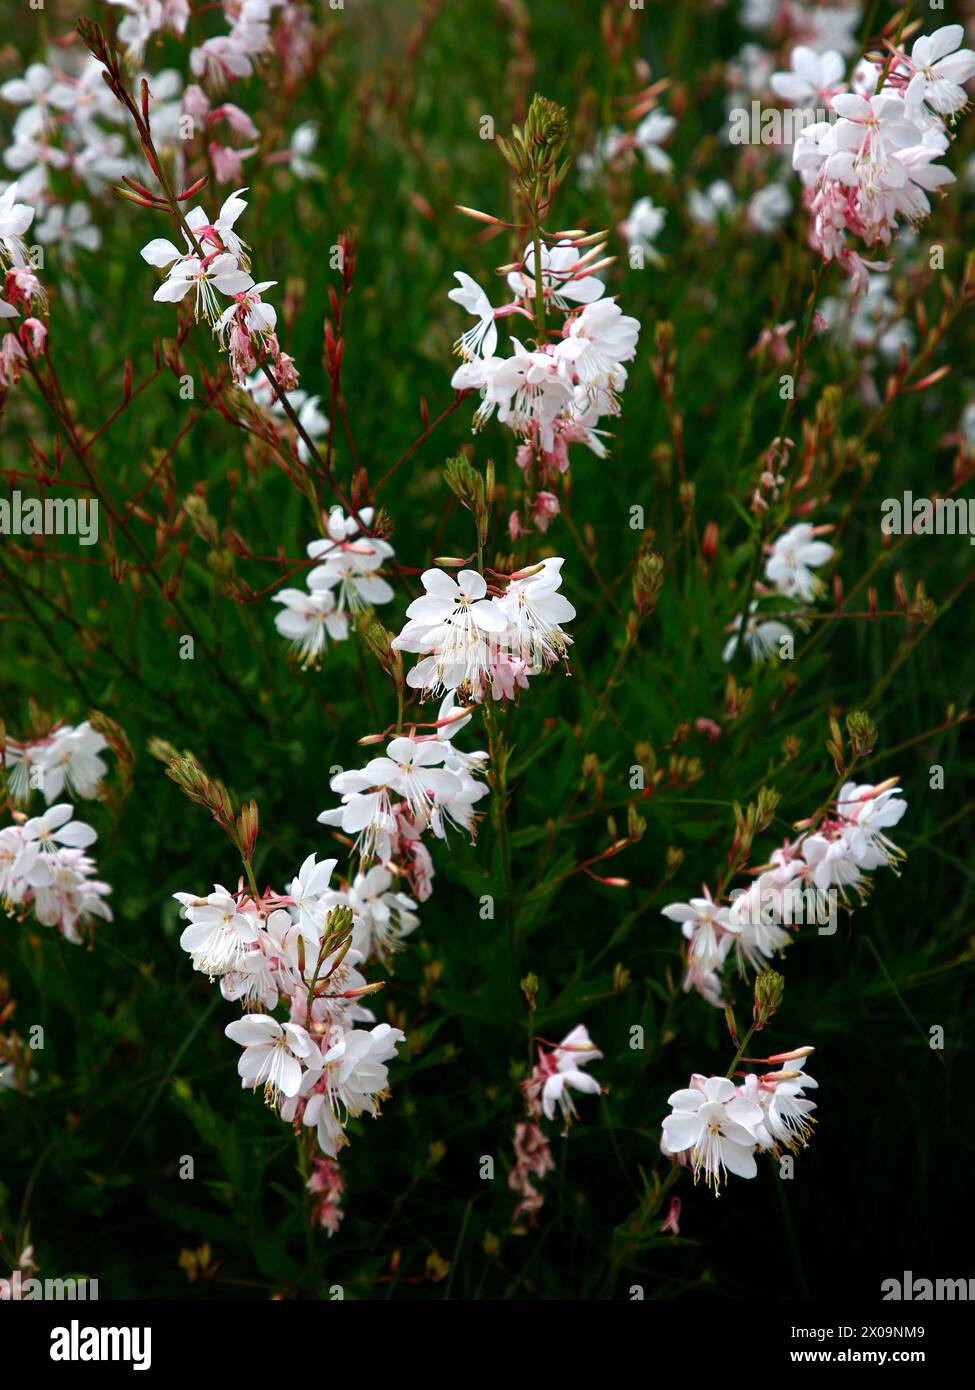 Nahaufnahme der weiß-rosa Blüten der mehrjährigen Gartenpflanze Gaura lindheimeri wirbelnde Schmetterlinge. Stockfoto